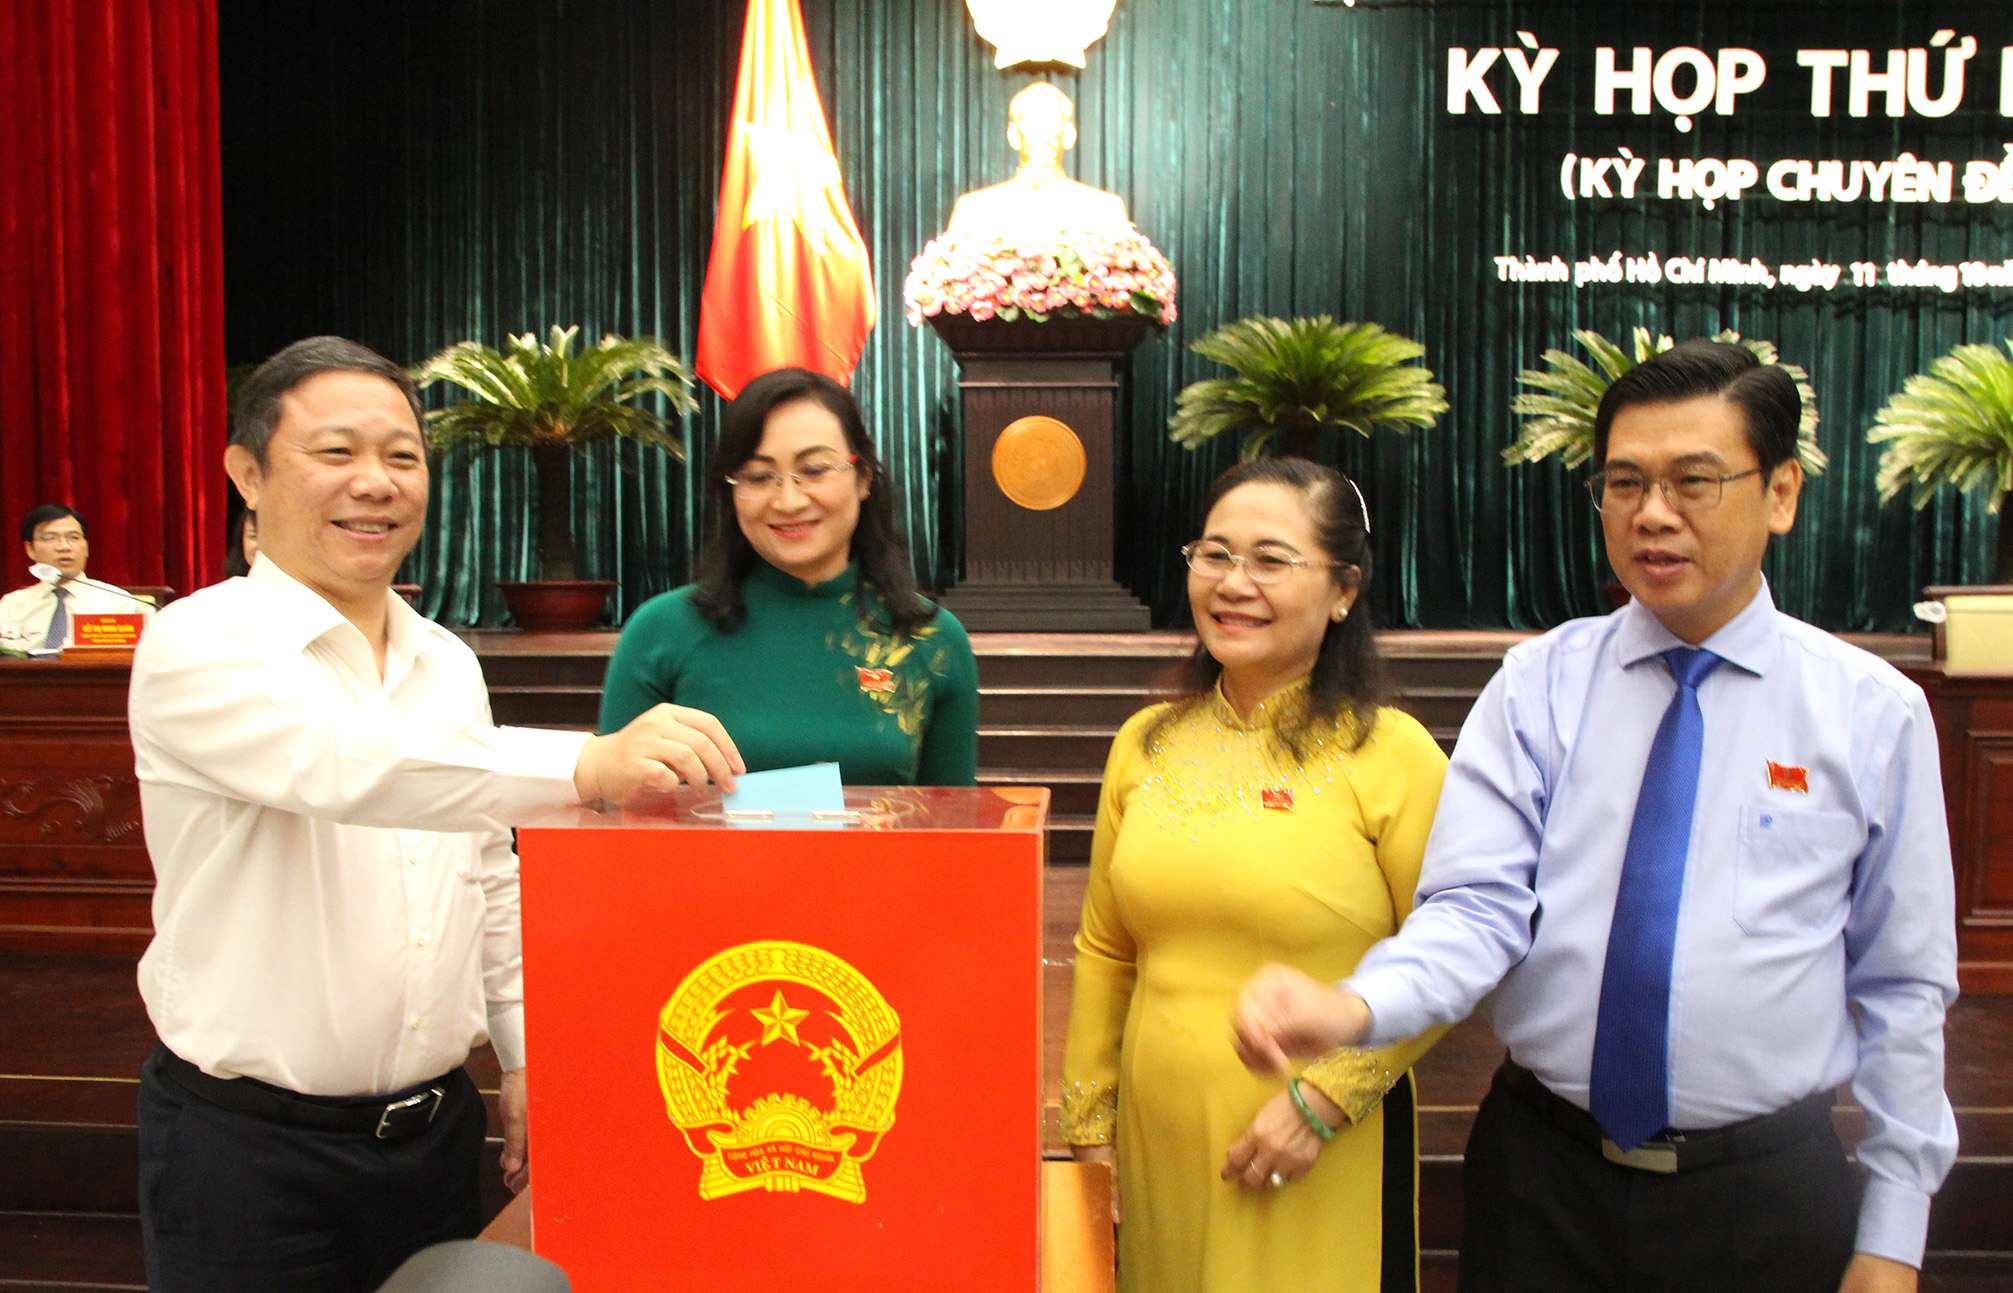 Đại biểu bỏ phiếu bầu Phó Chủ tịch UBND TP. Hồ Chí Minh (Ảnh: H.Hào)